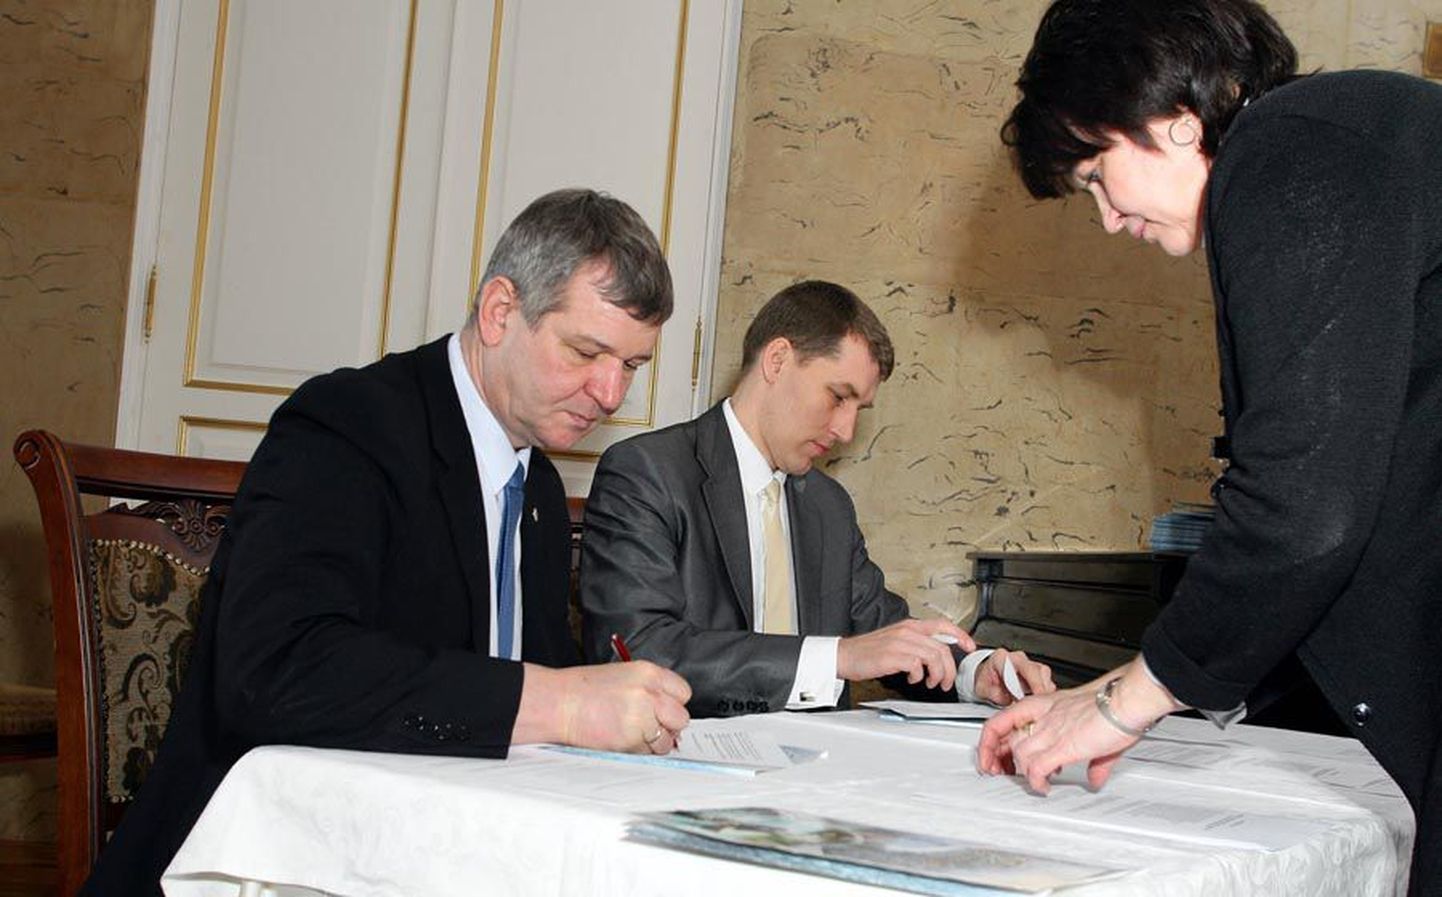 Esimesena allkirjastasid ühisleppe Viljandi maavanem Lembit Kruuse (vasakul) ja Pärnu maavanem Andres Metsoja.